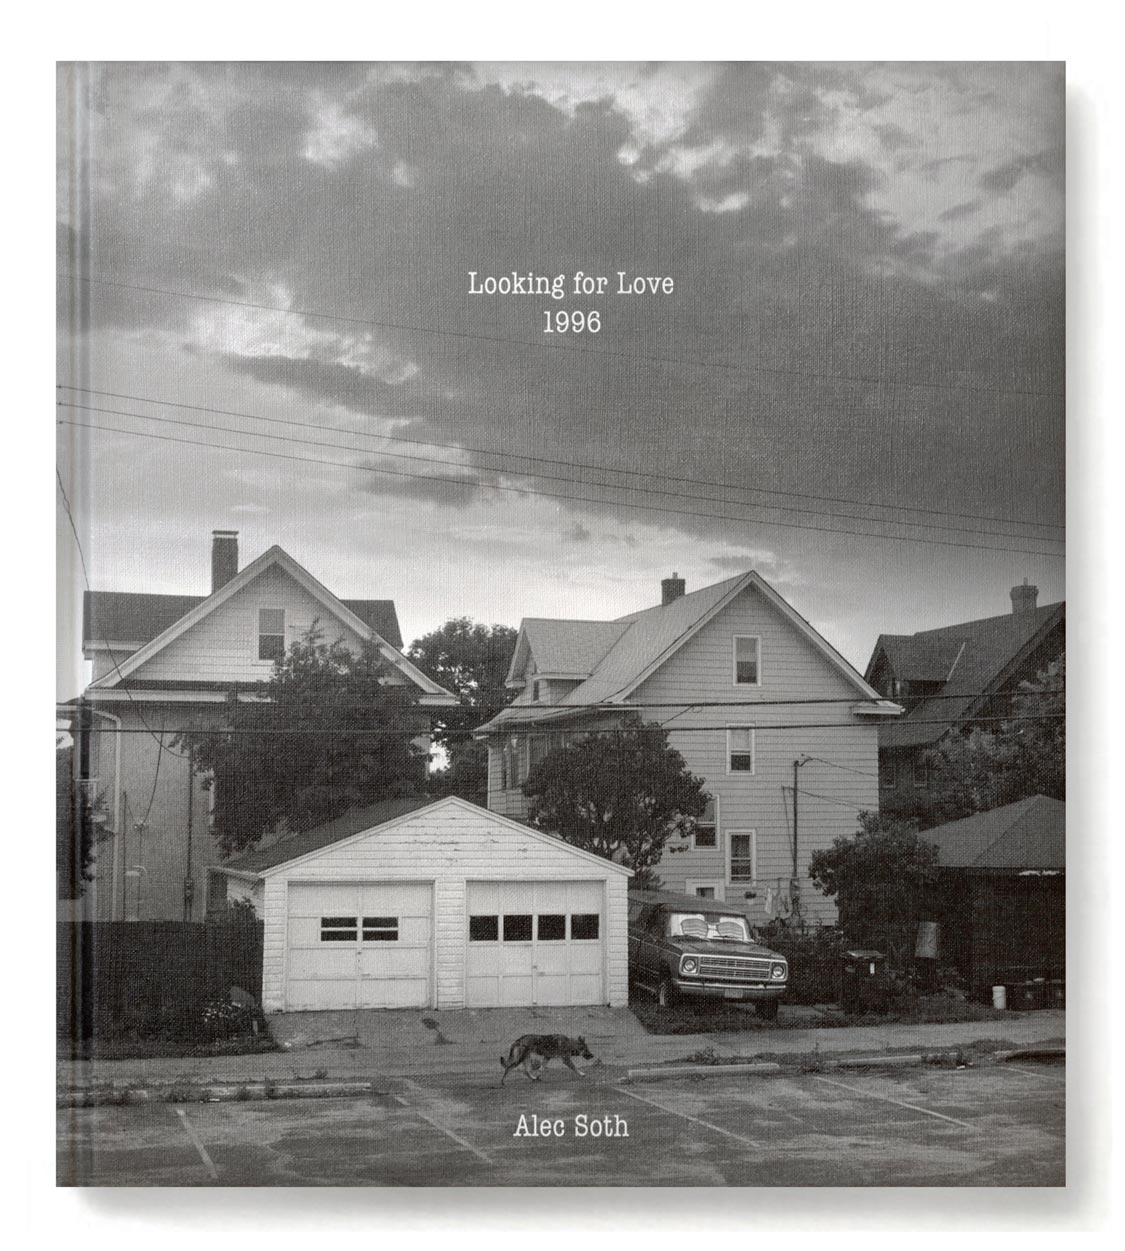 Looking for Love. Kominek Books, 2012.